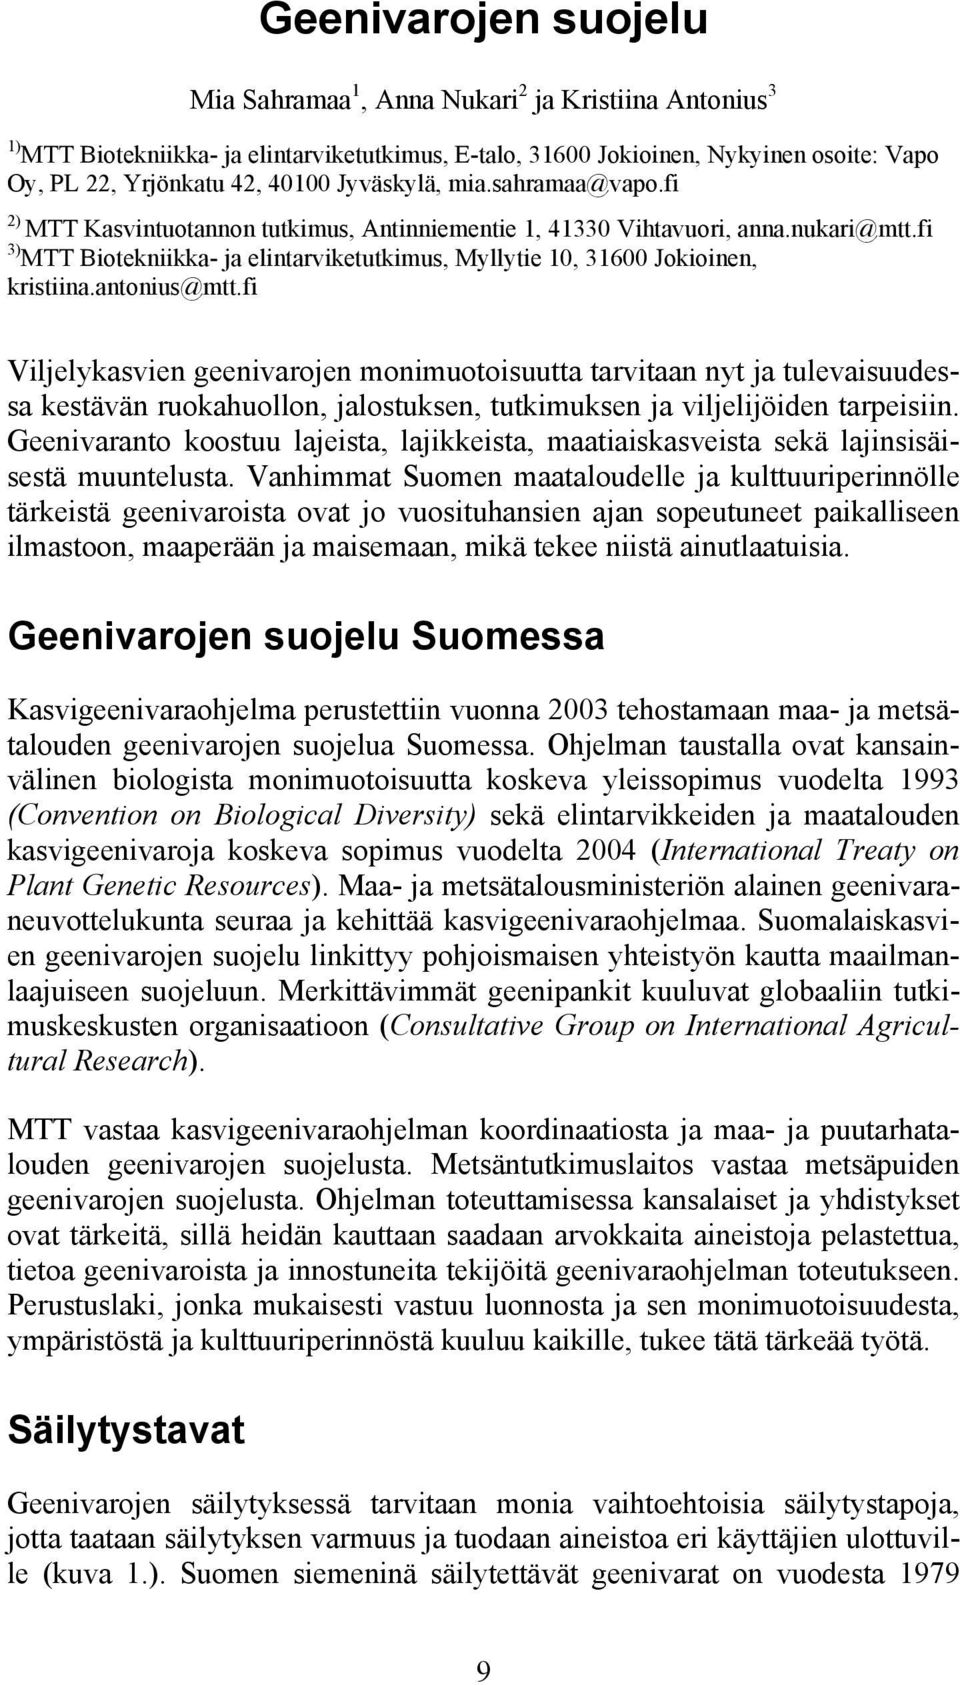 fi 3) MTT Biotekniikka- ja elintarviketutkimus, Myllytie 10, 31600 Jokioinen, kristiina.antonius@mtt.